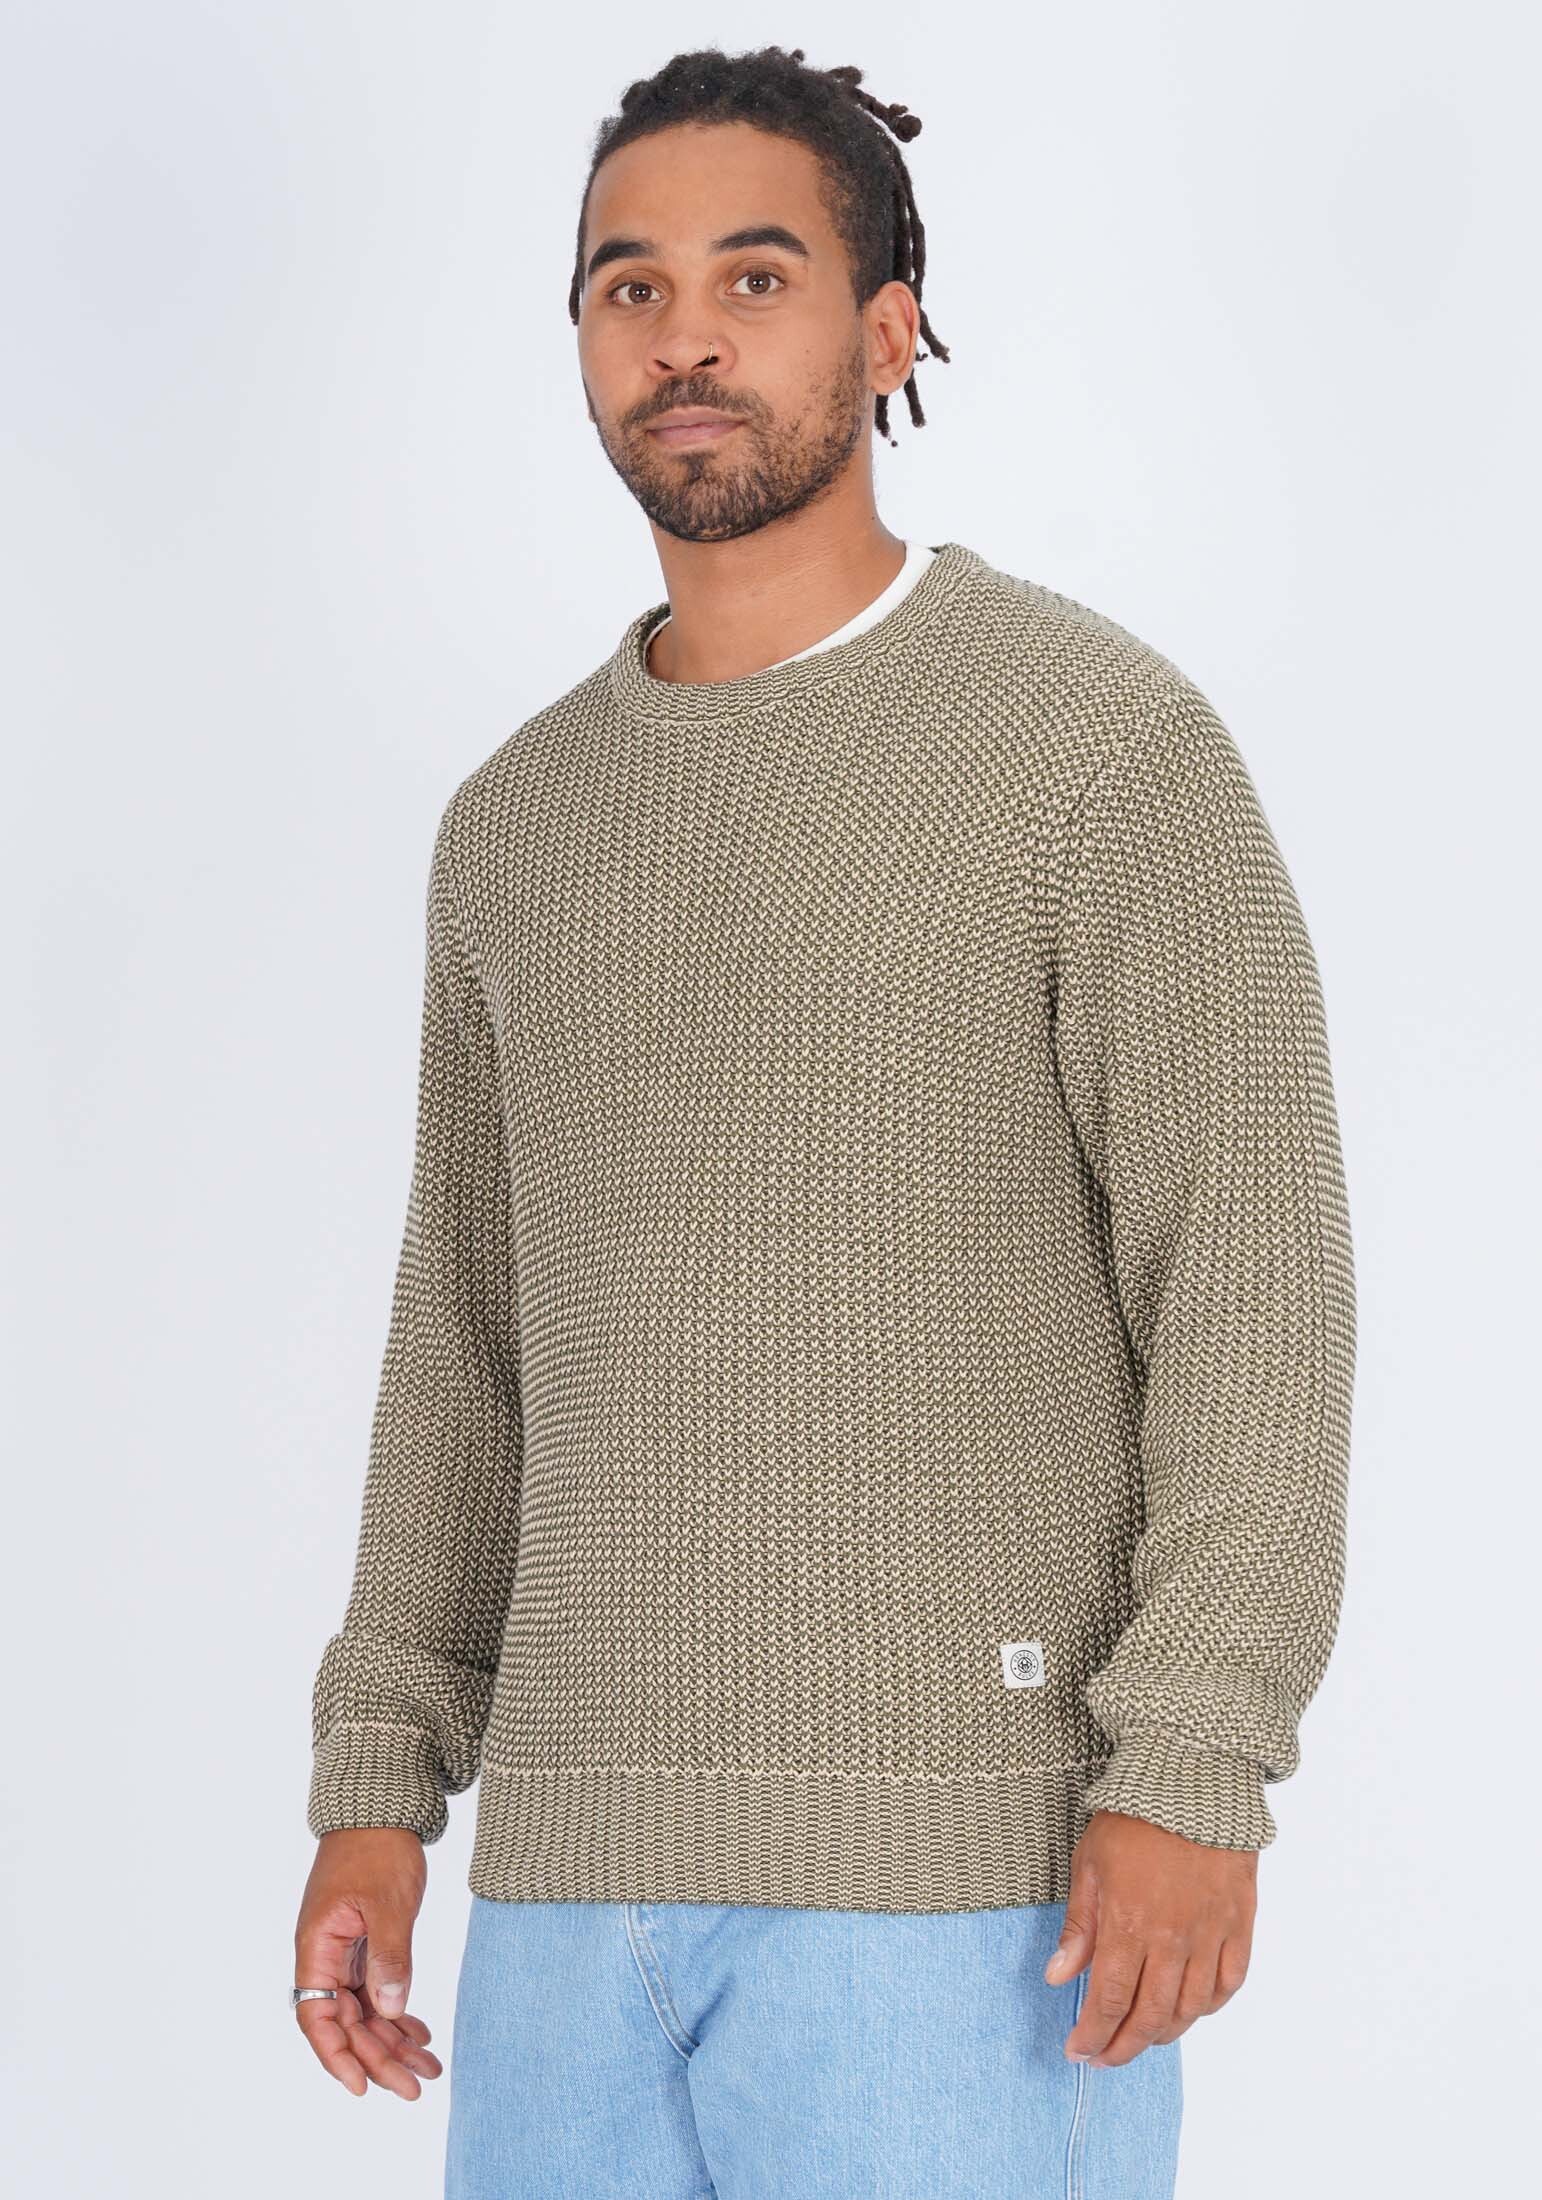 пуловер honesty rules strick jacquard цвет multi colors Пуловер HONESTY RULES Strick Cross, бежевый